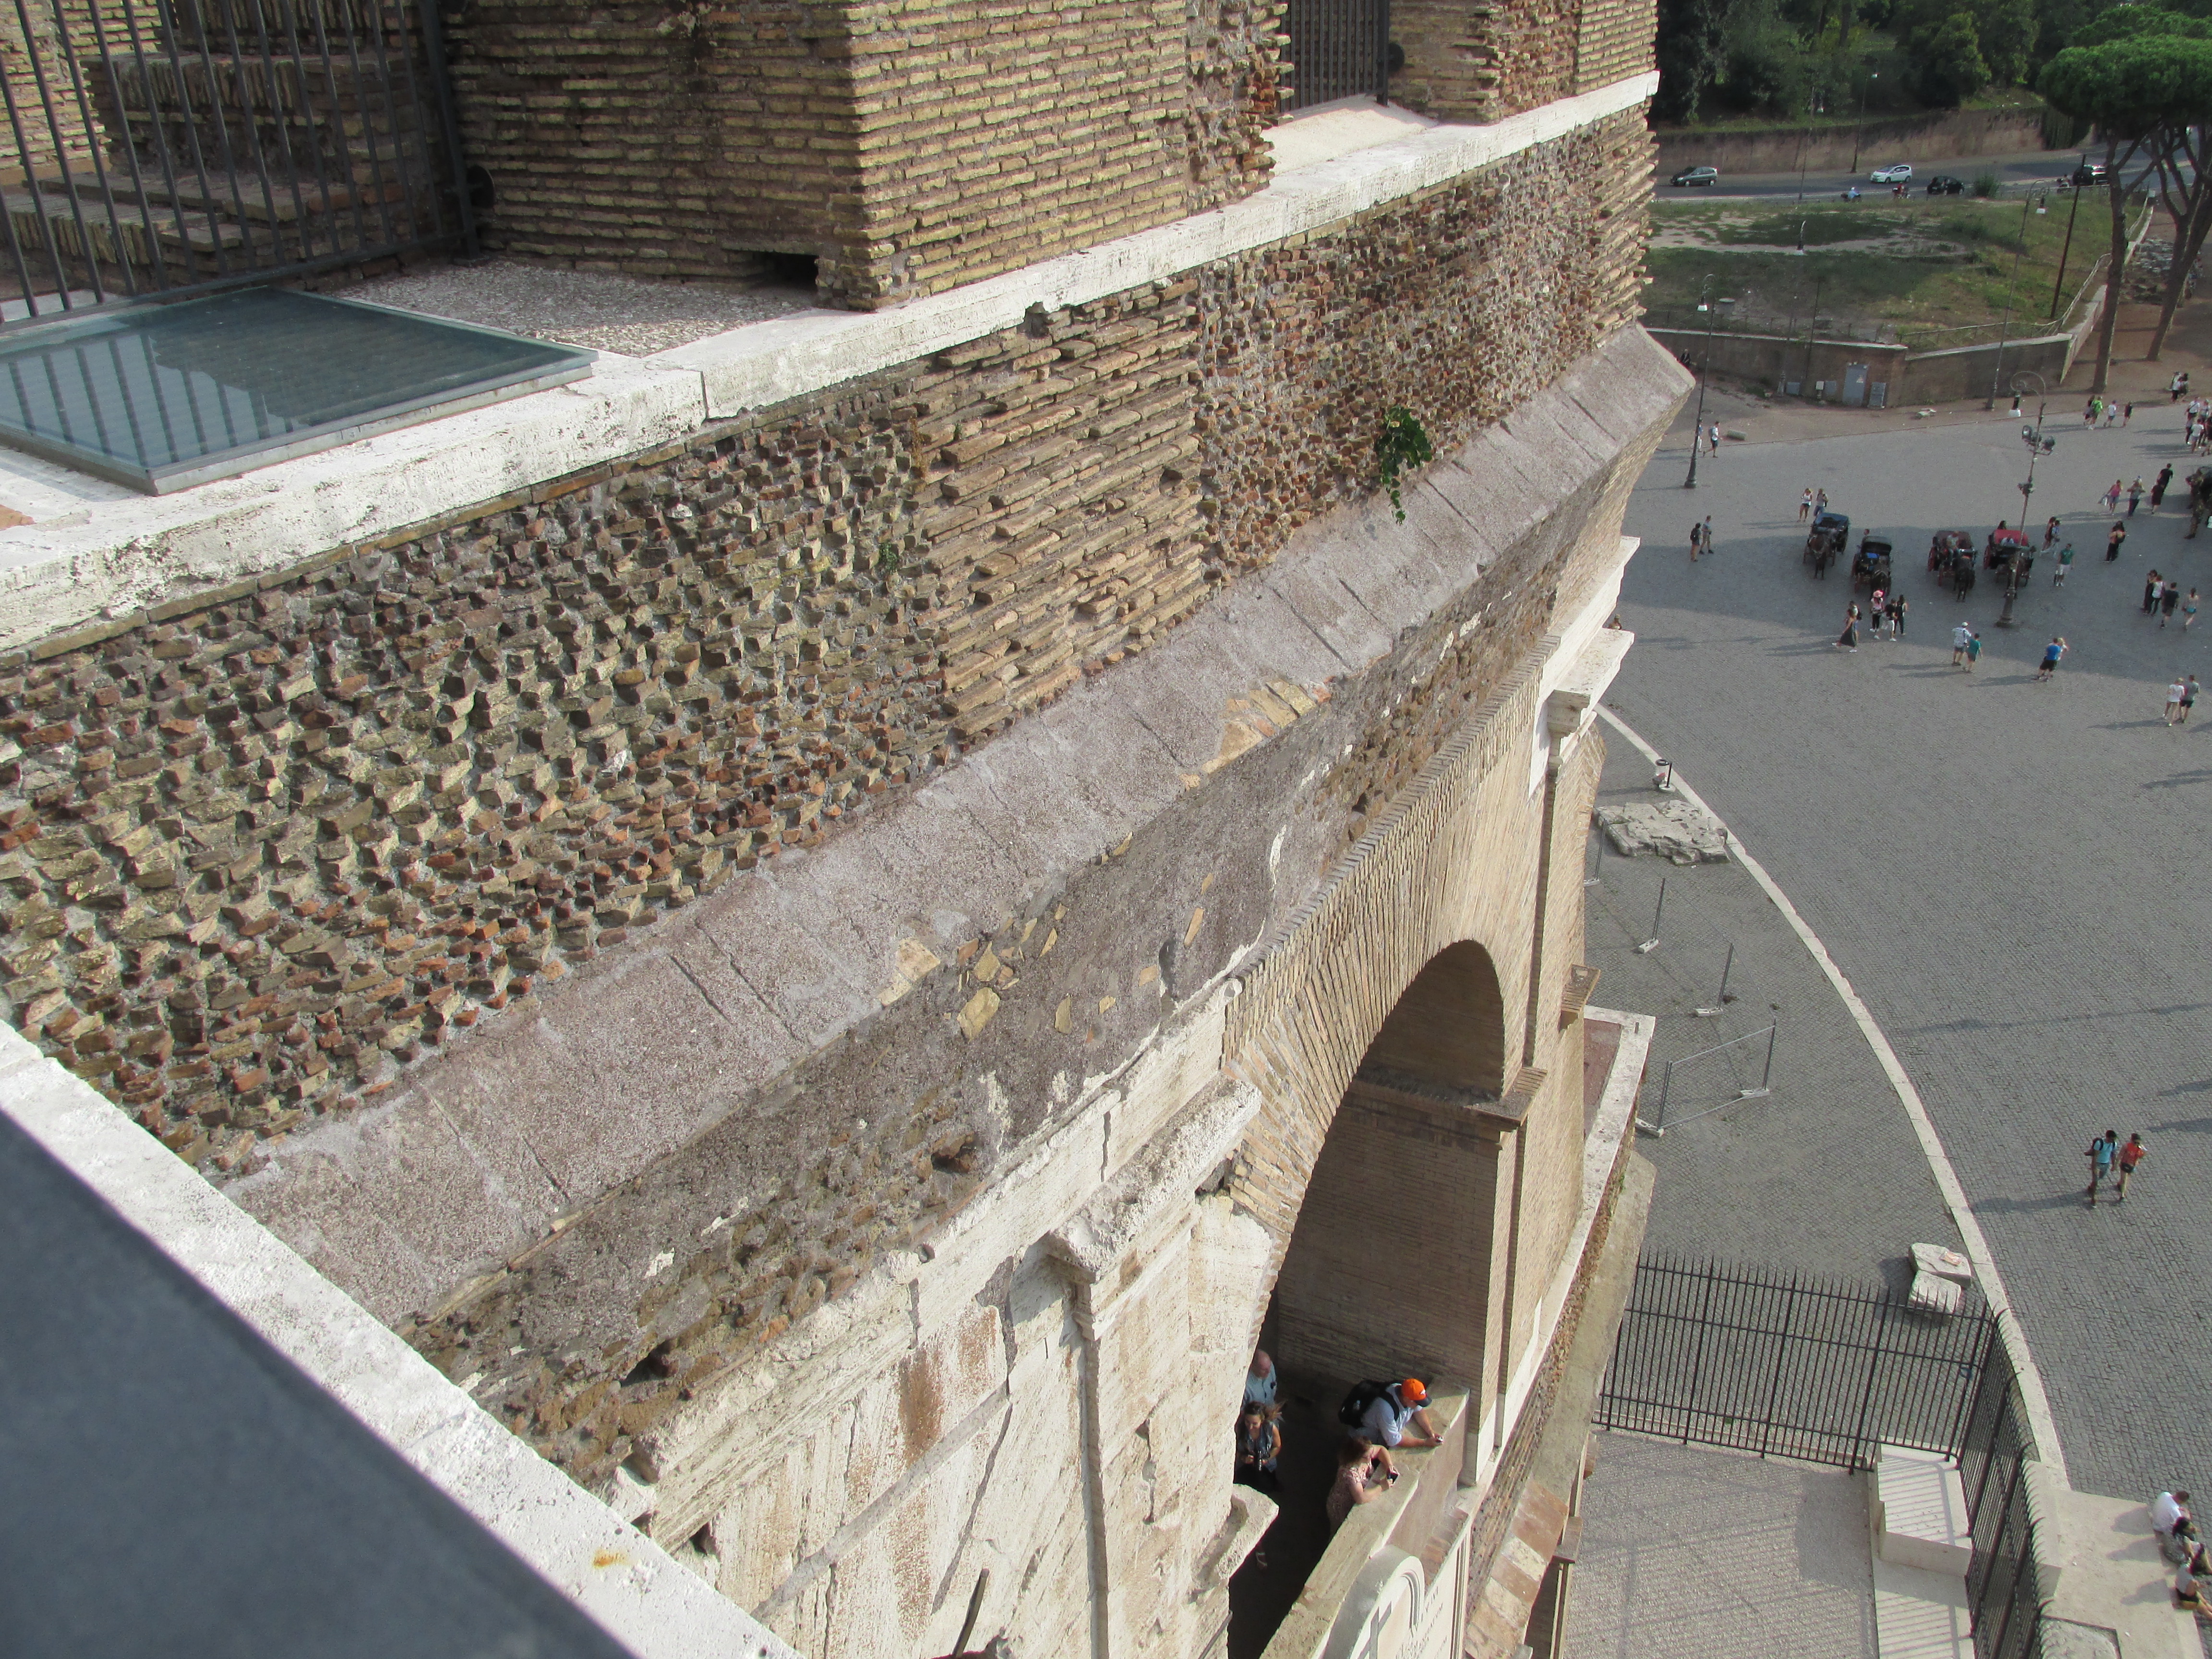 img 2755 - Consejos para visitar el Coliseo en Roma